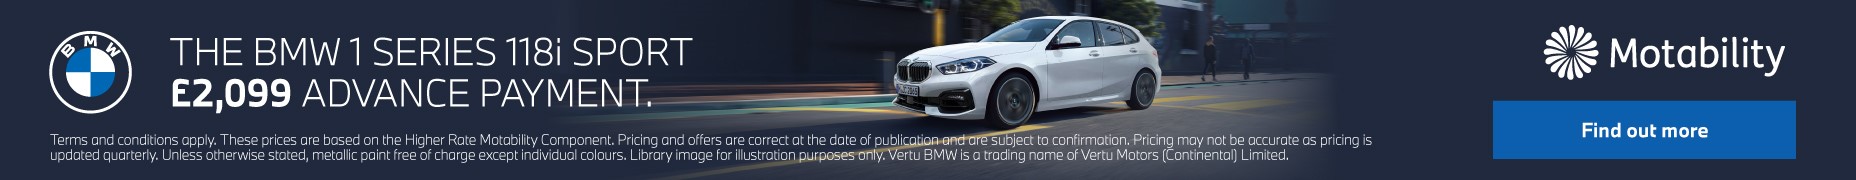 02 1 New - Motability Offer Vertu BMW